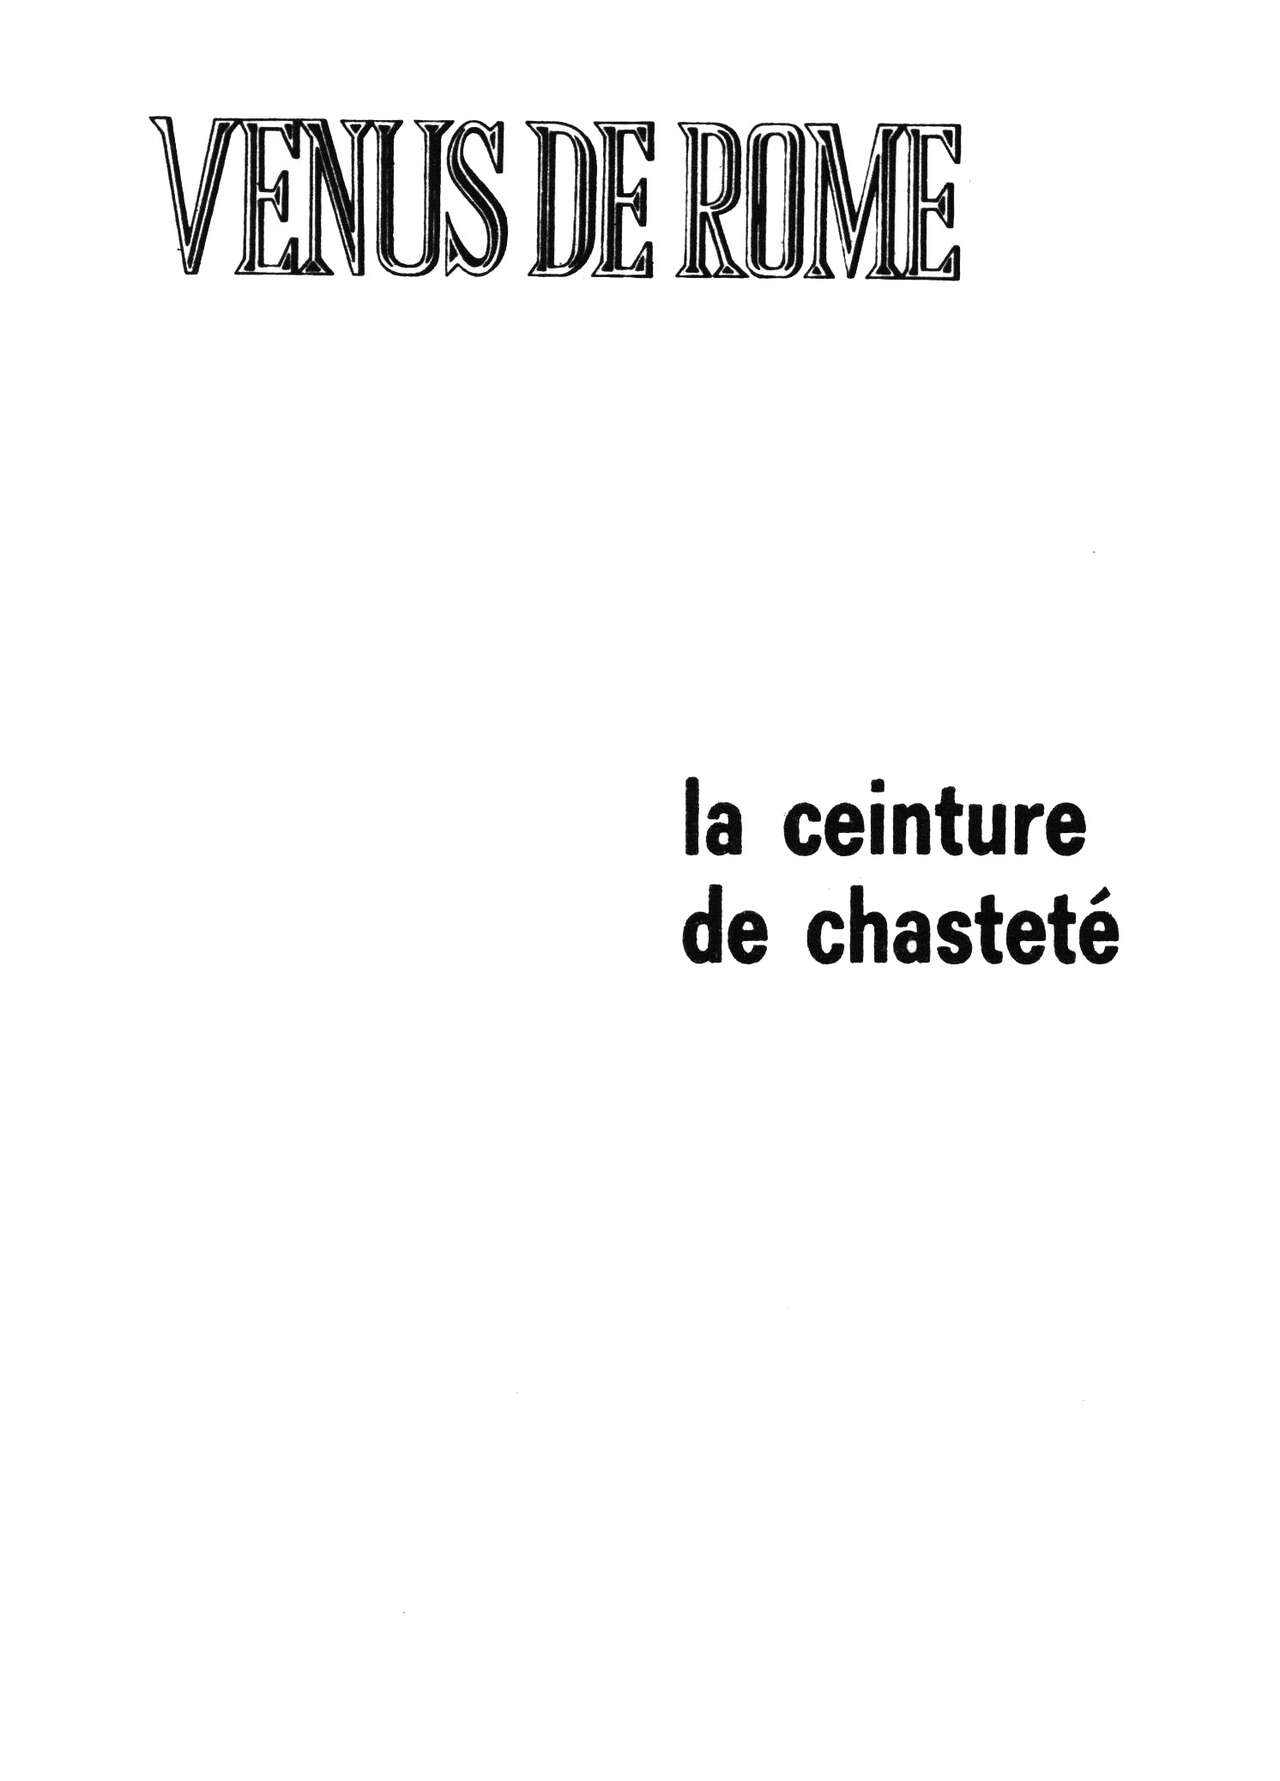 Venus de Rome 002 - La ceinture de chasteté [French] [PJP] 2